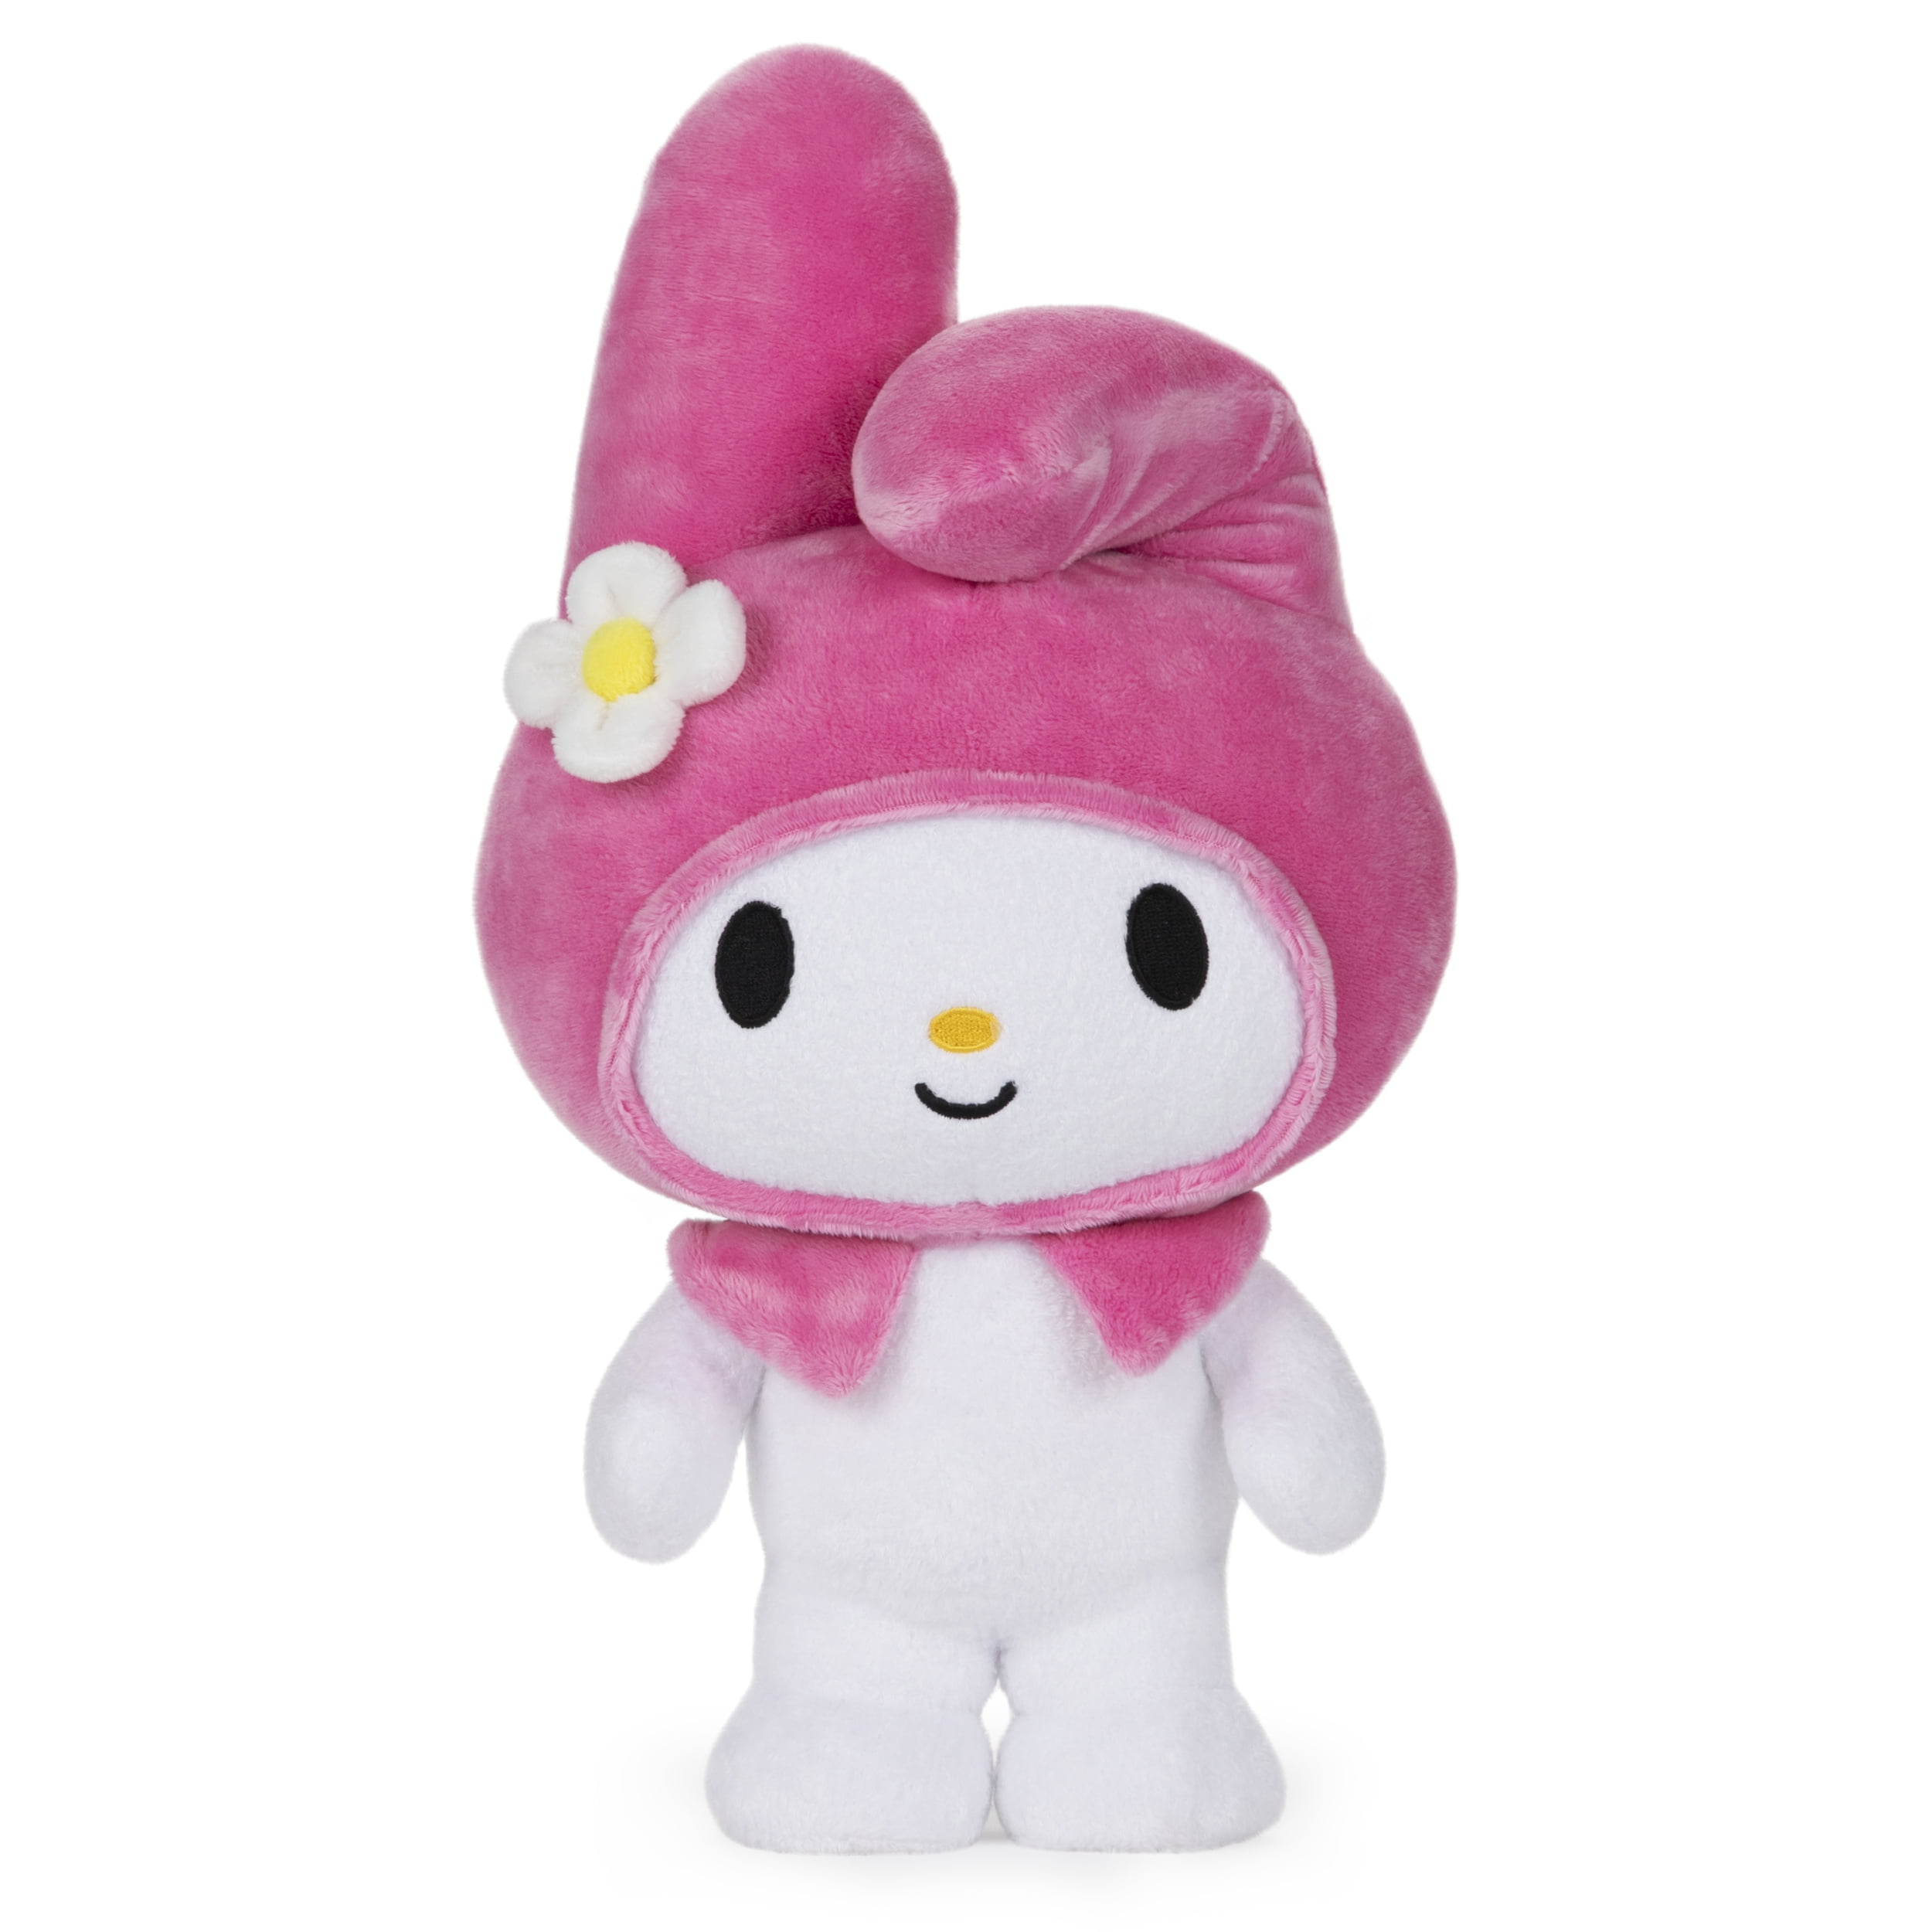 Hello Kitty and Friends Talking Mini Plush Mascot My Melody Figure Kids Gift